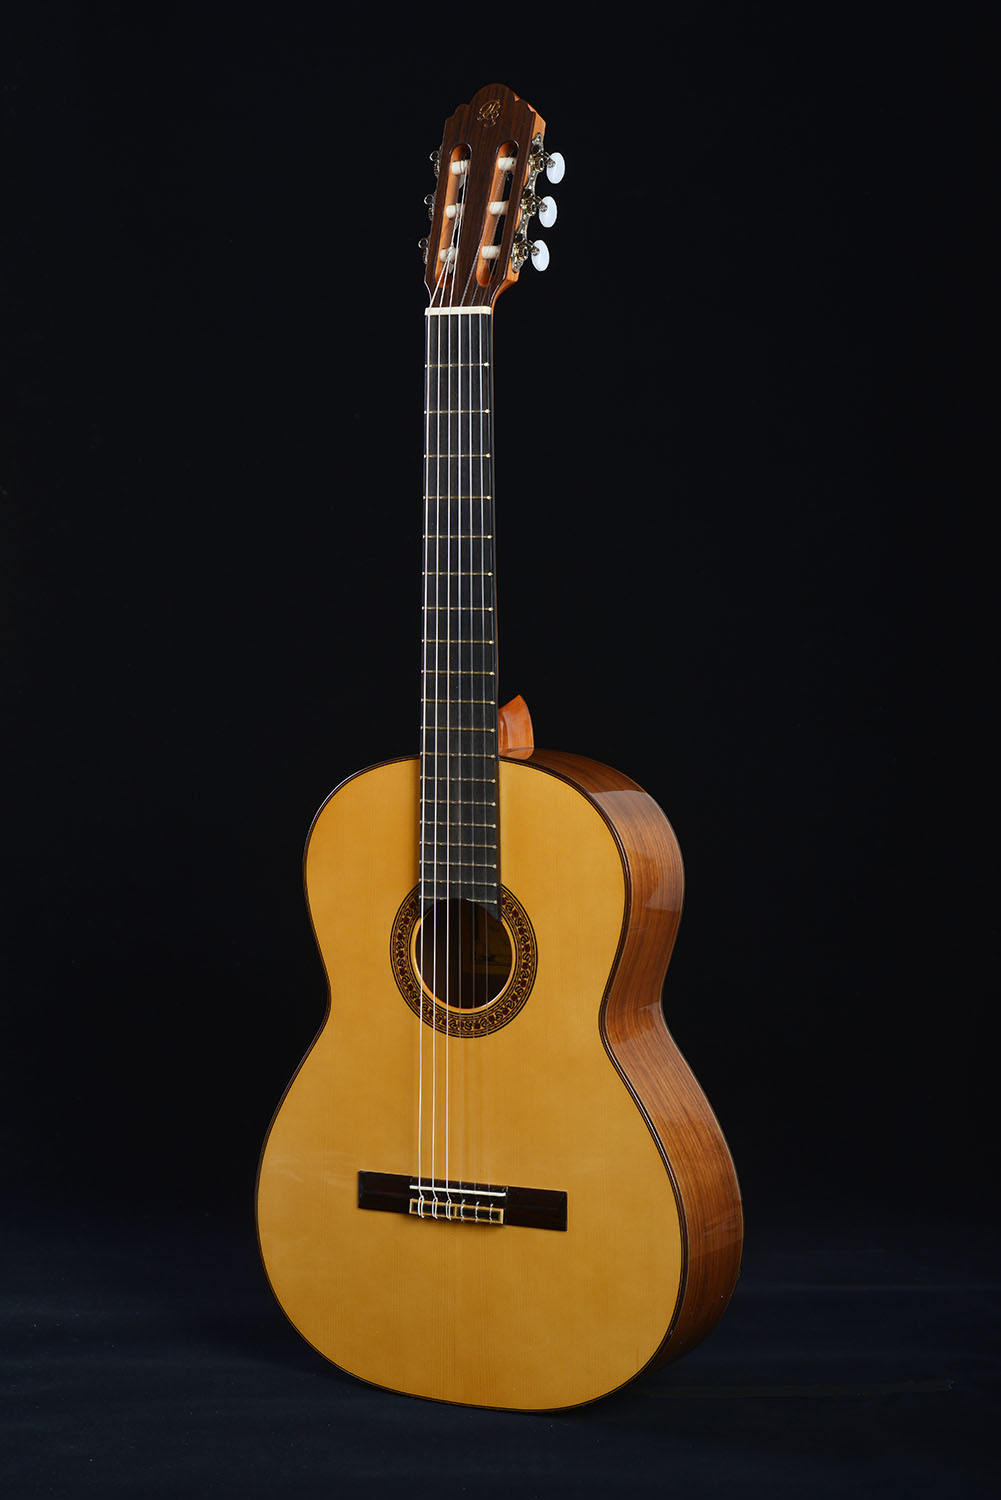 G6-s < スペインギター振興会 セファルディ | プルデンシオ・サエス社